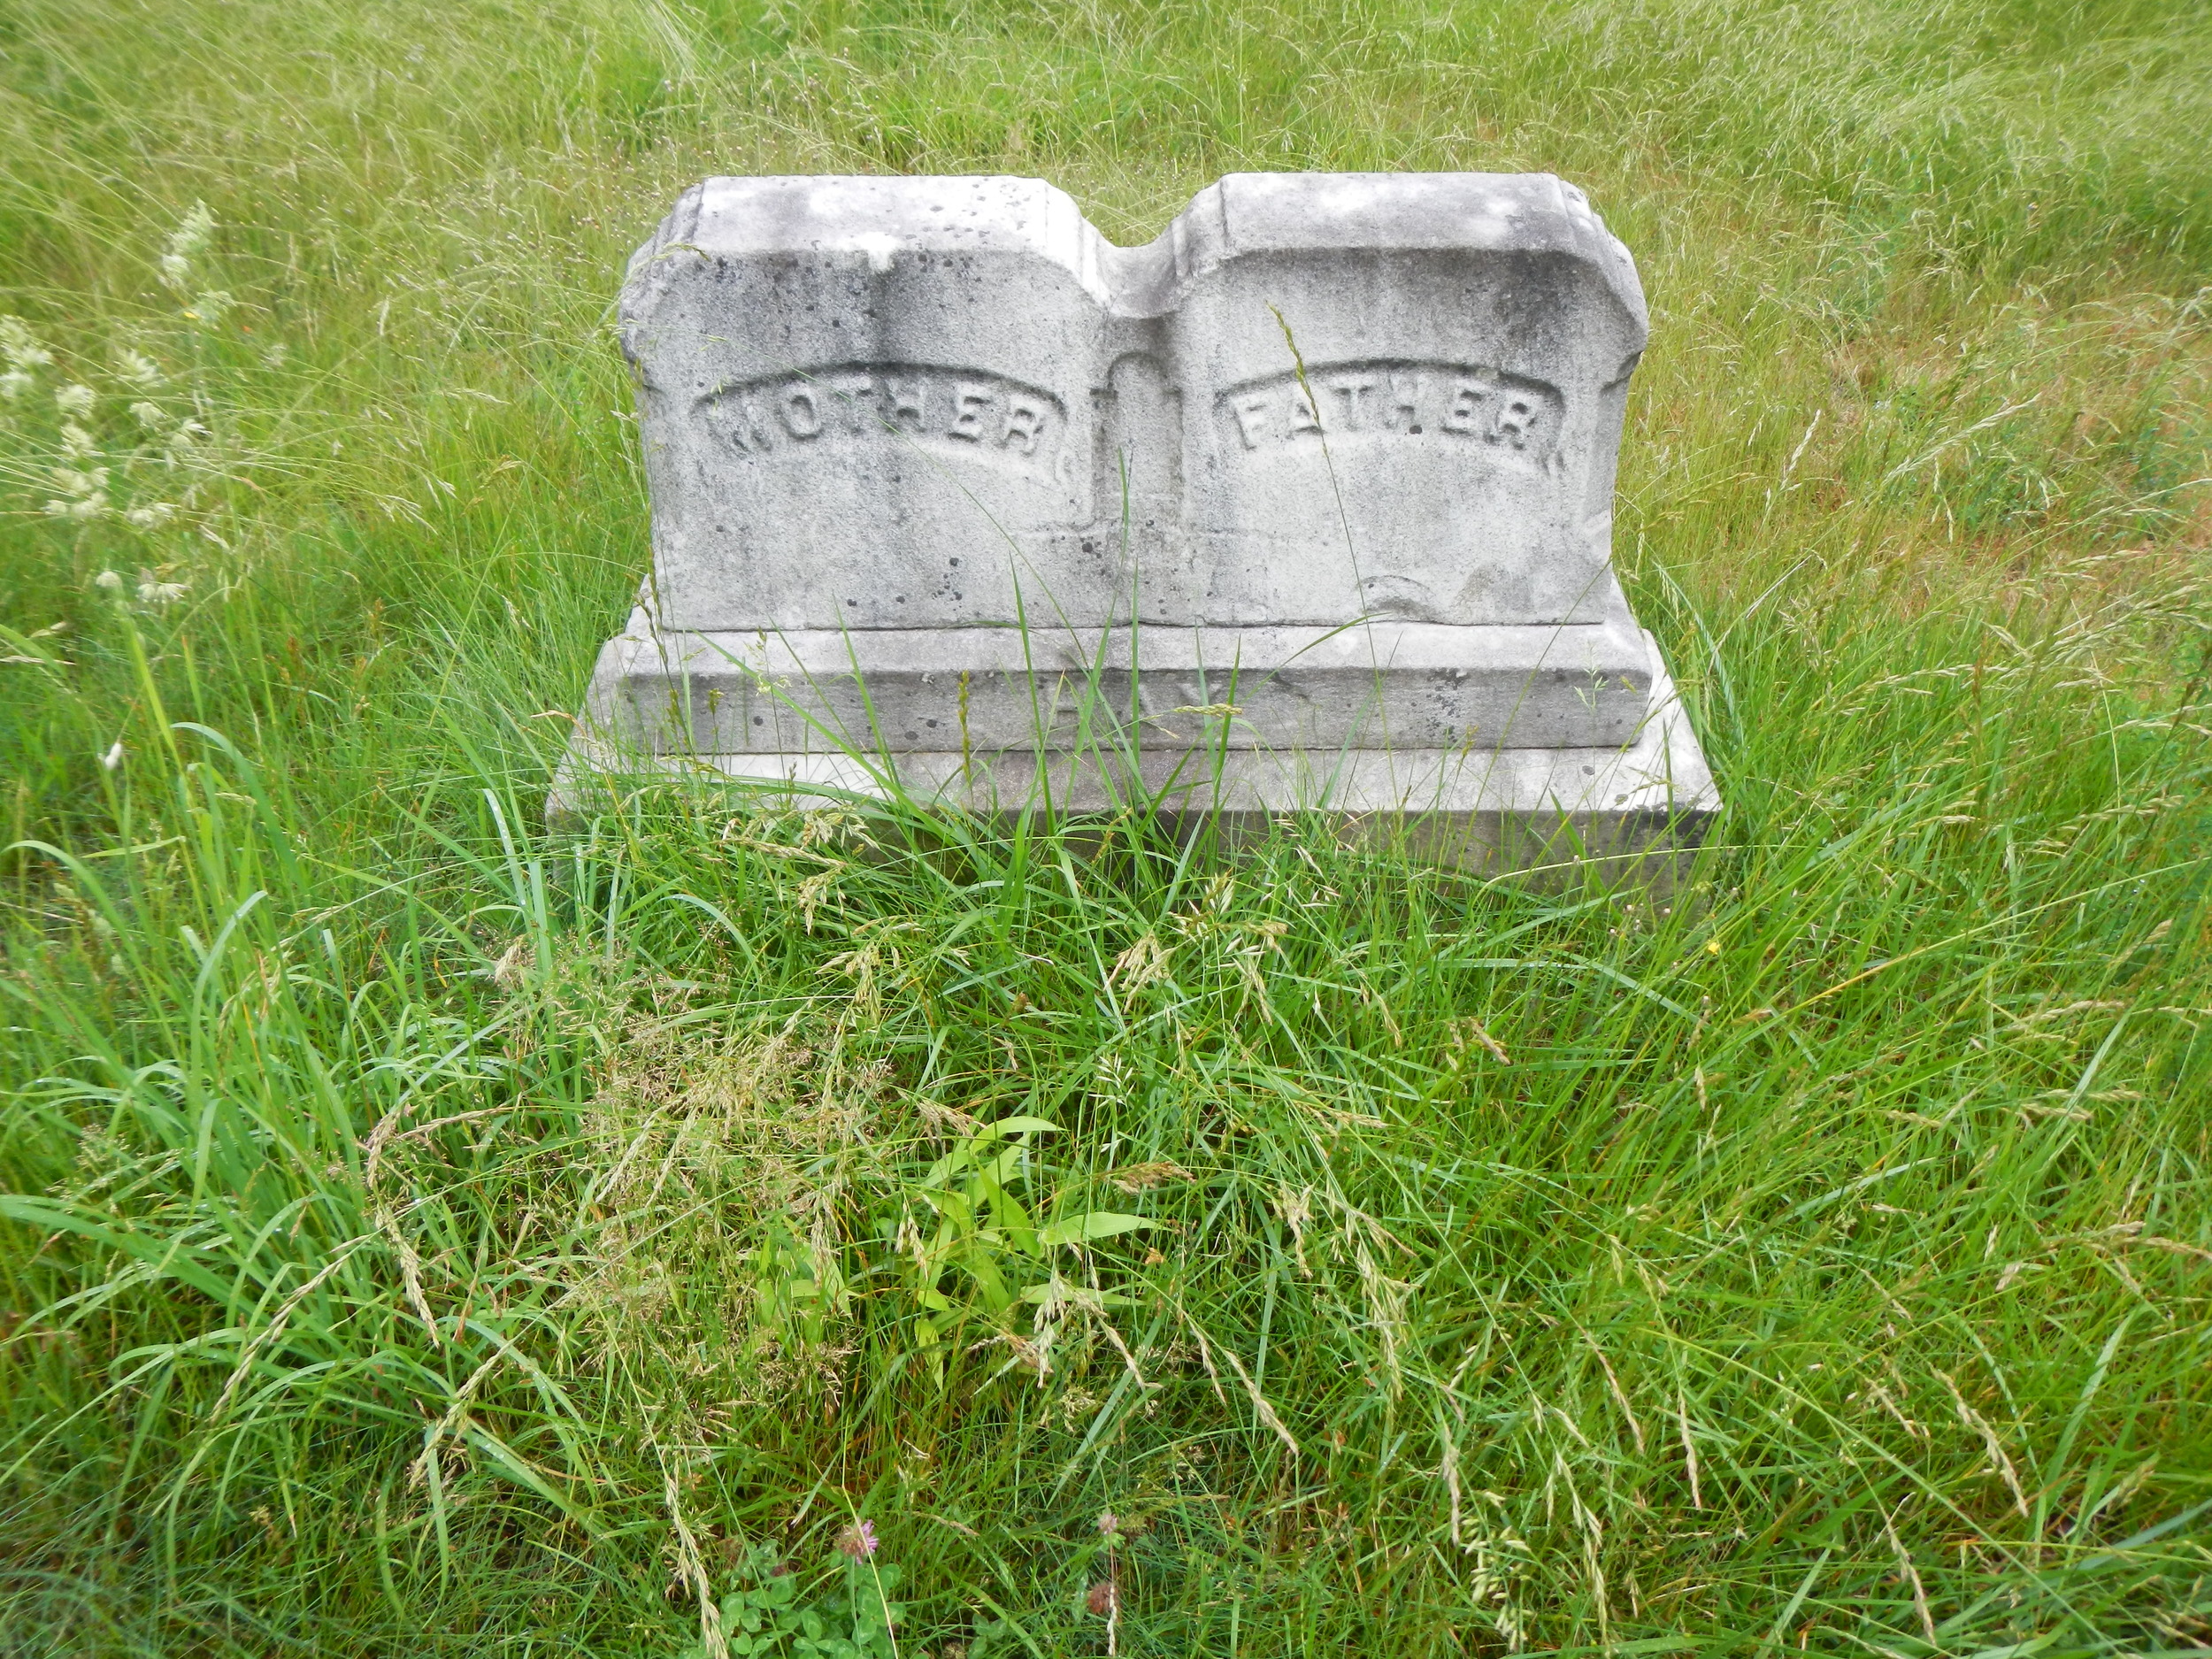 Porltand_Western_Cemetery_Viewing_Headstone_Detail_2013 (2).JPG